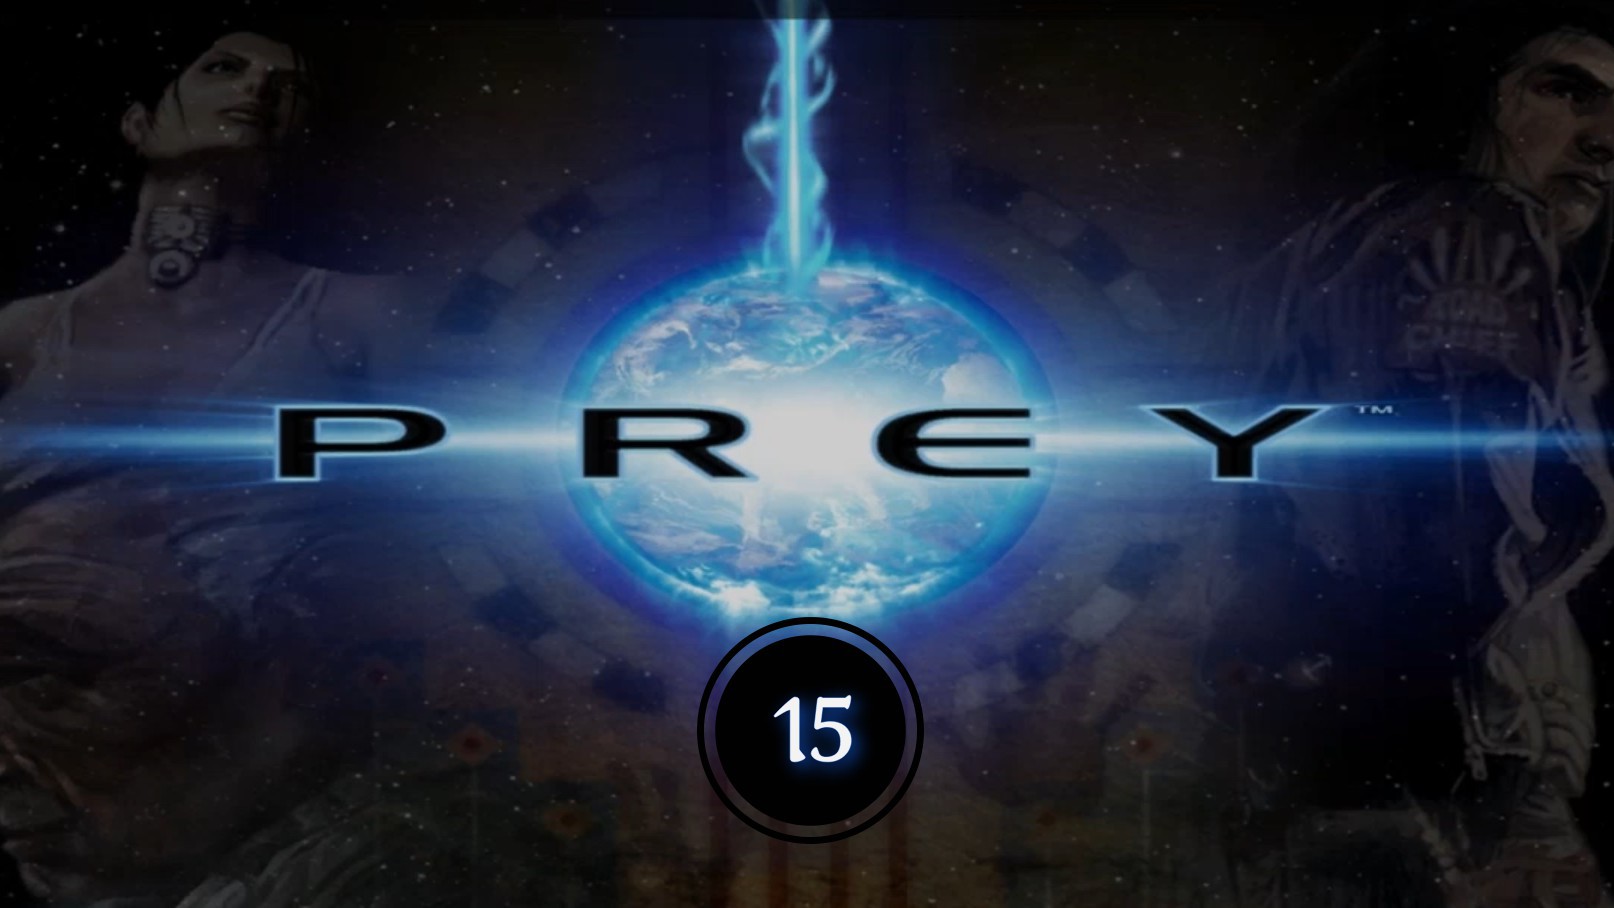 Prey (2006) 15